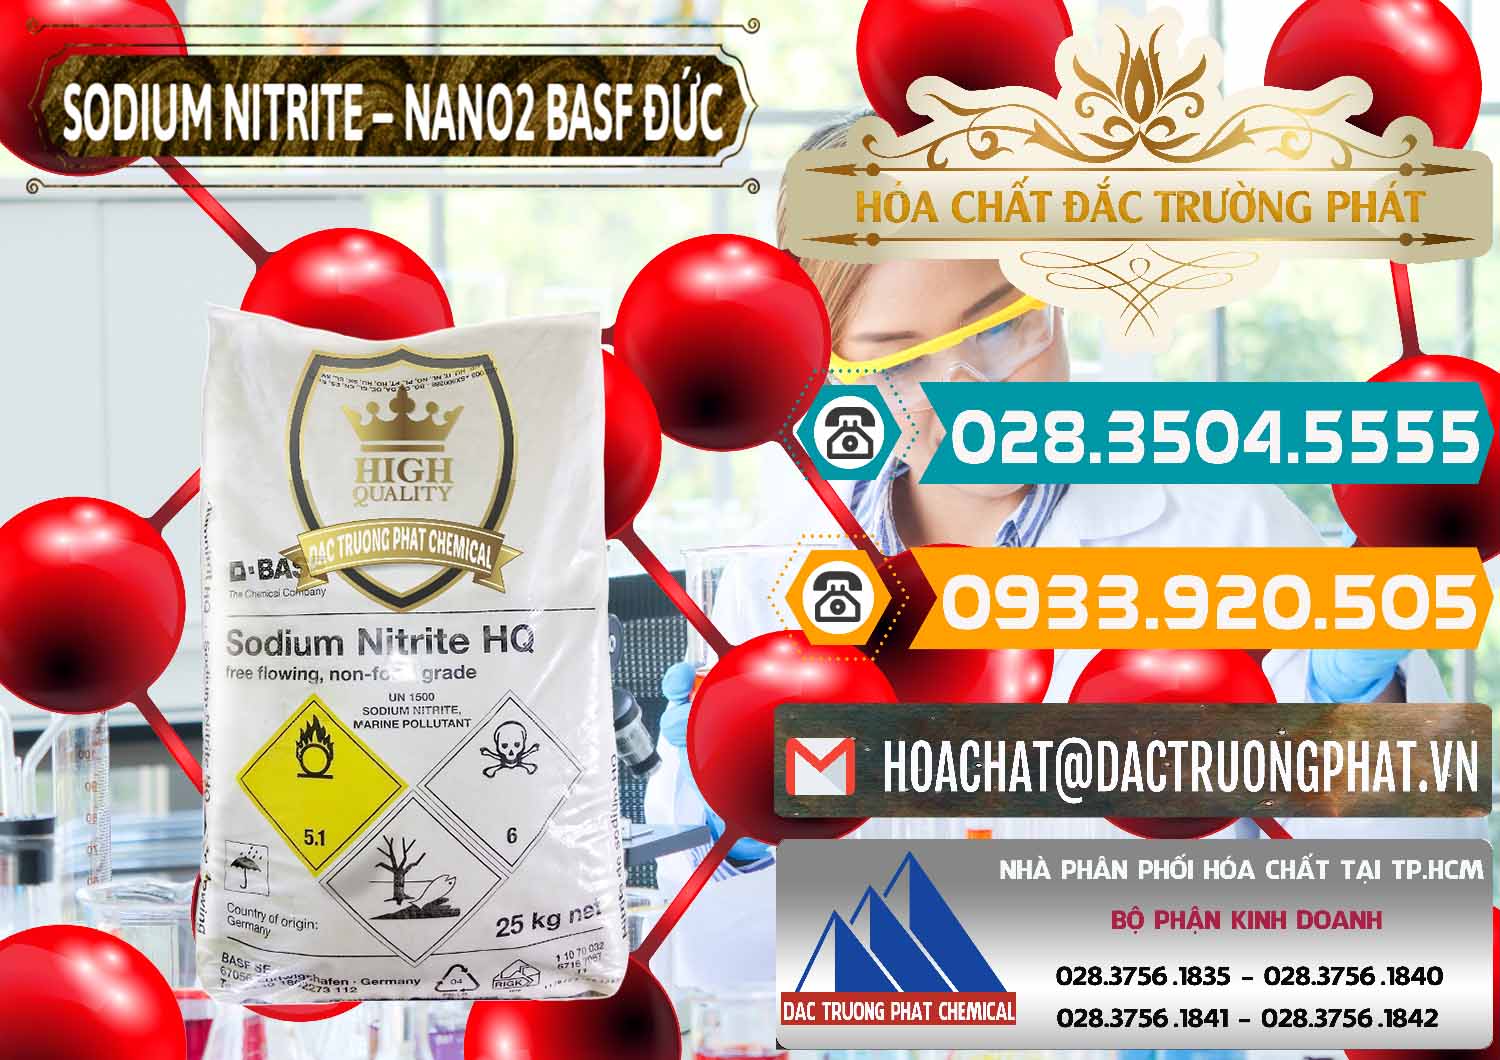 Nơi chuyên bán ( cung cấp ) Sodium Nitrite - NANO2 Đức BASF Germany - 0148 - Cty cung cấp & phân phối hóa chất tại TP.HCM - congtyhoachat.vn